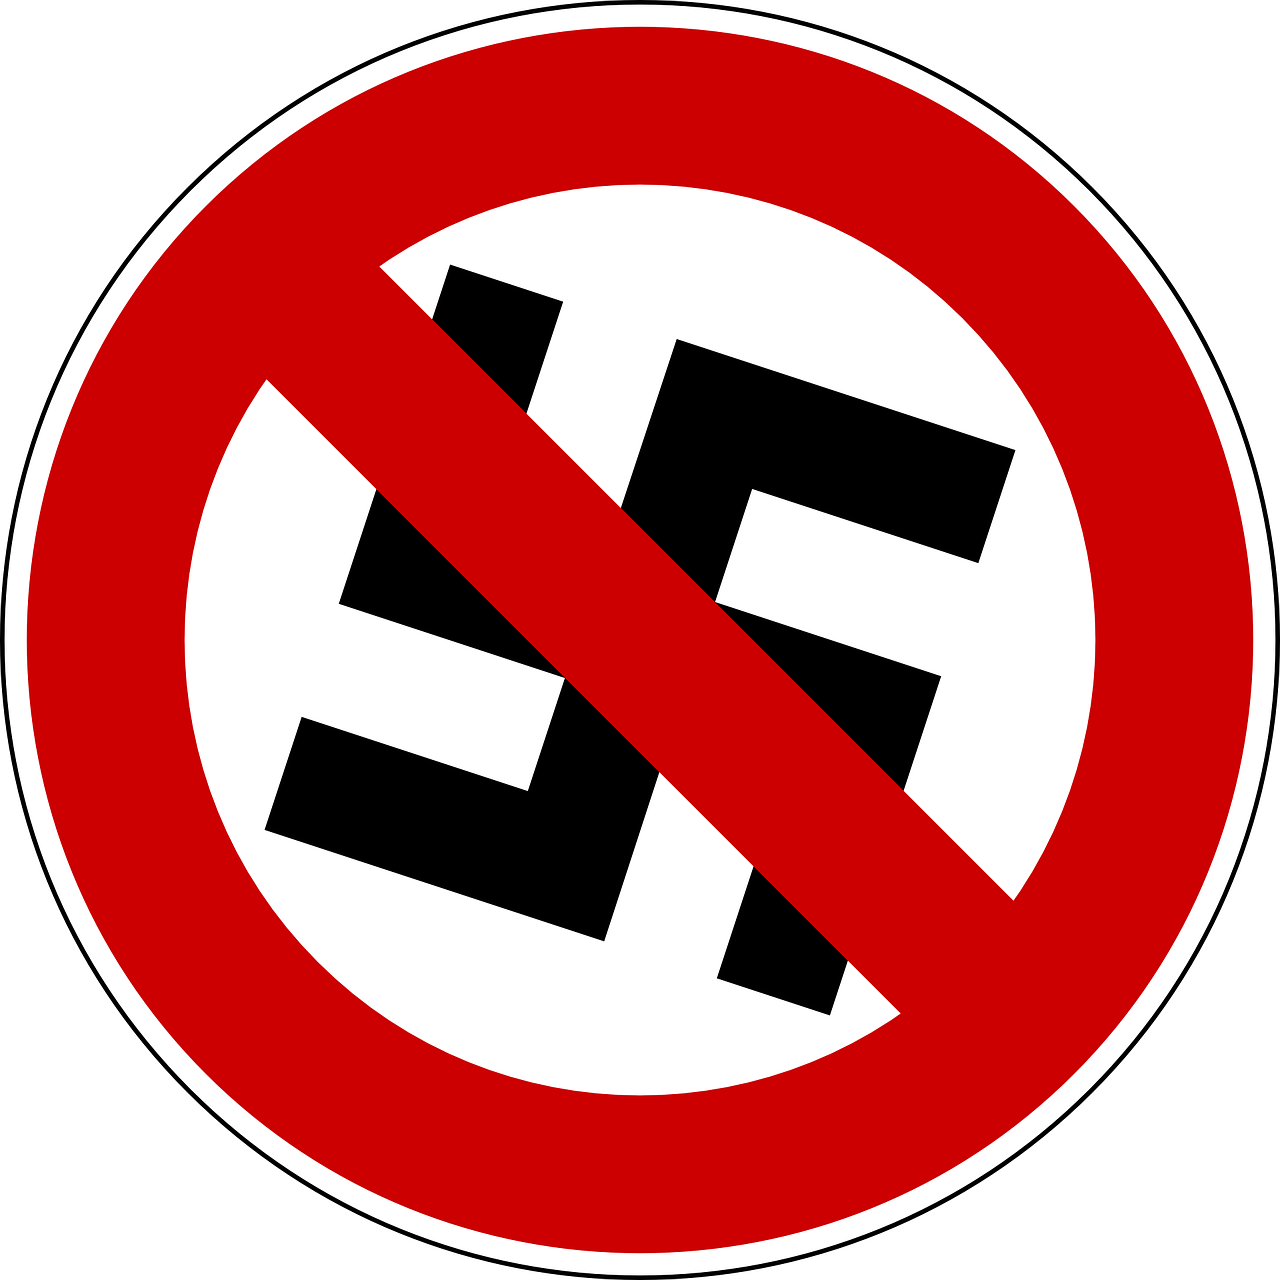 Swastika, Draudžiama, Prieš, Naciai, Nazi, Vokietija, Draudimas, Trečias Reichas, Adolfas, Hitleris